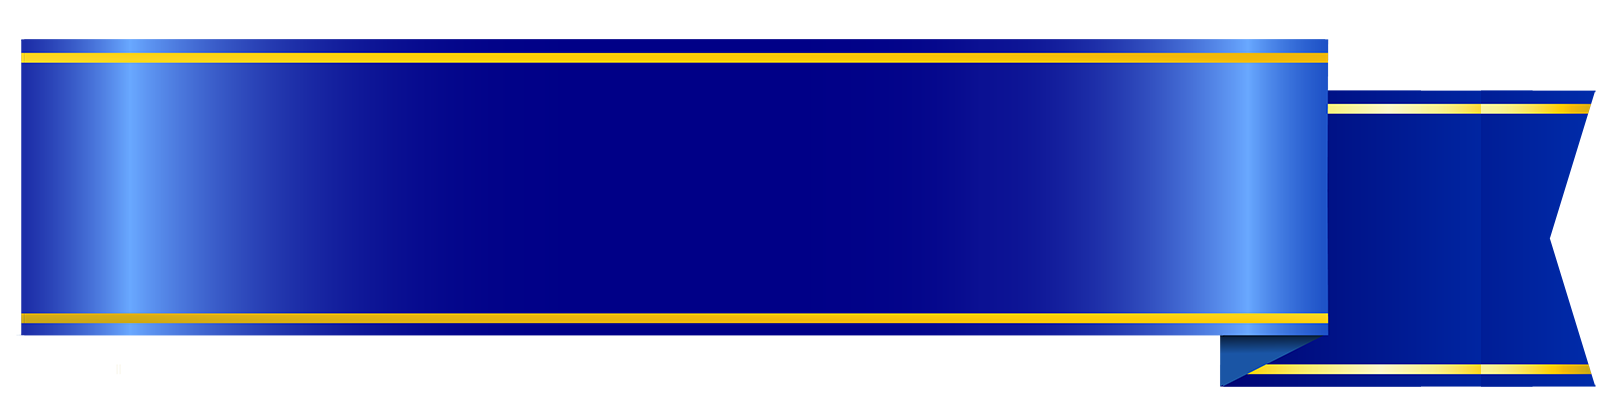 Header Blue Ribbon Background PNG Image